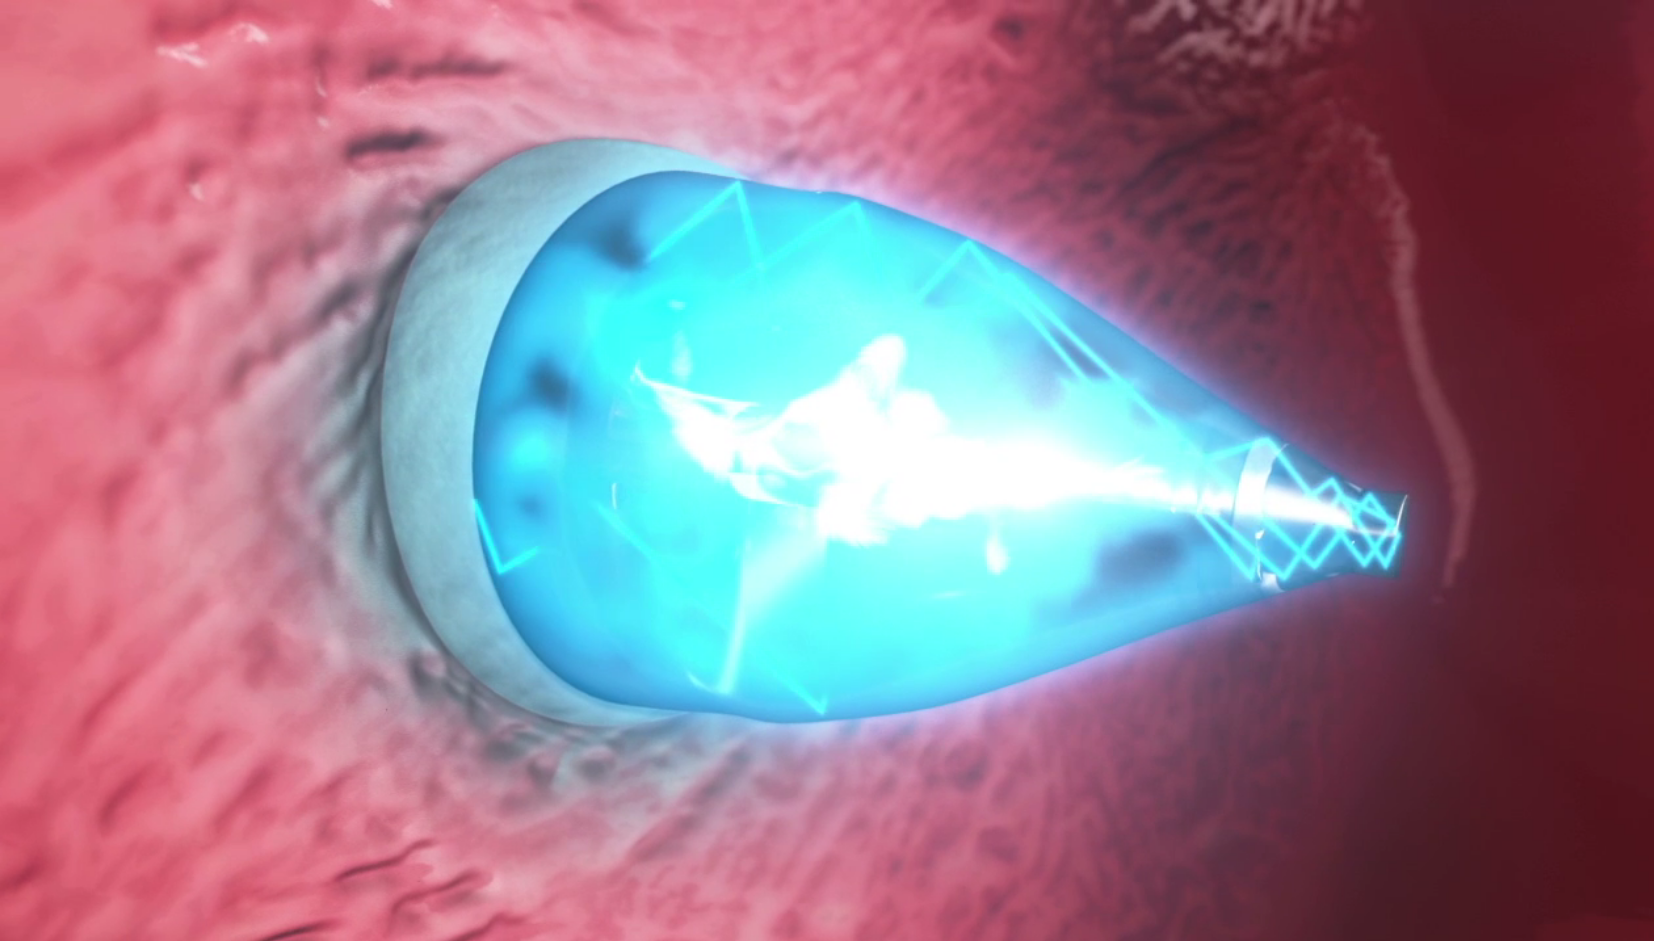 Il catetere smart a luce UV: interventi al cuore senza chirurgia